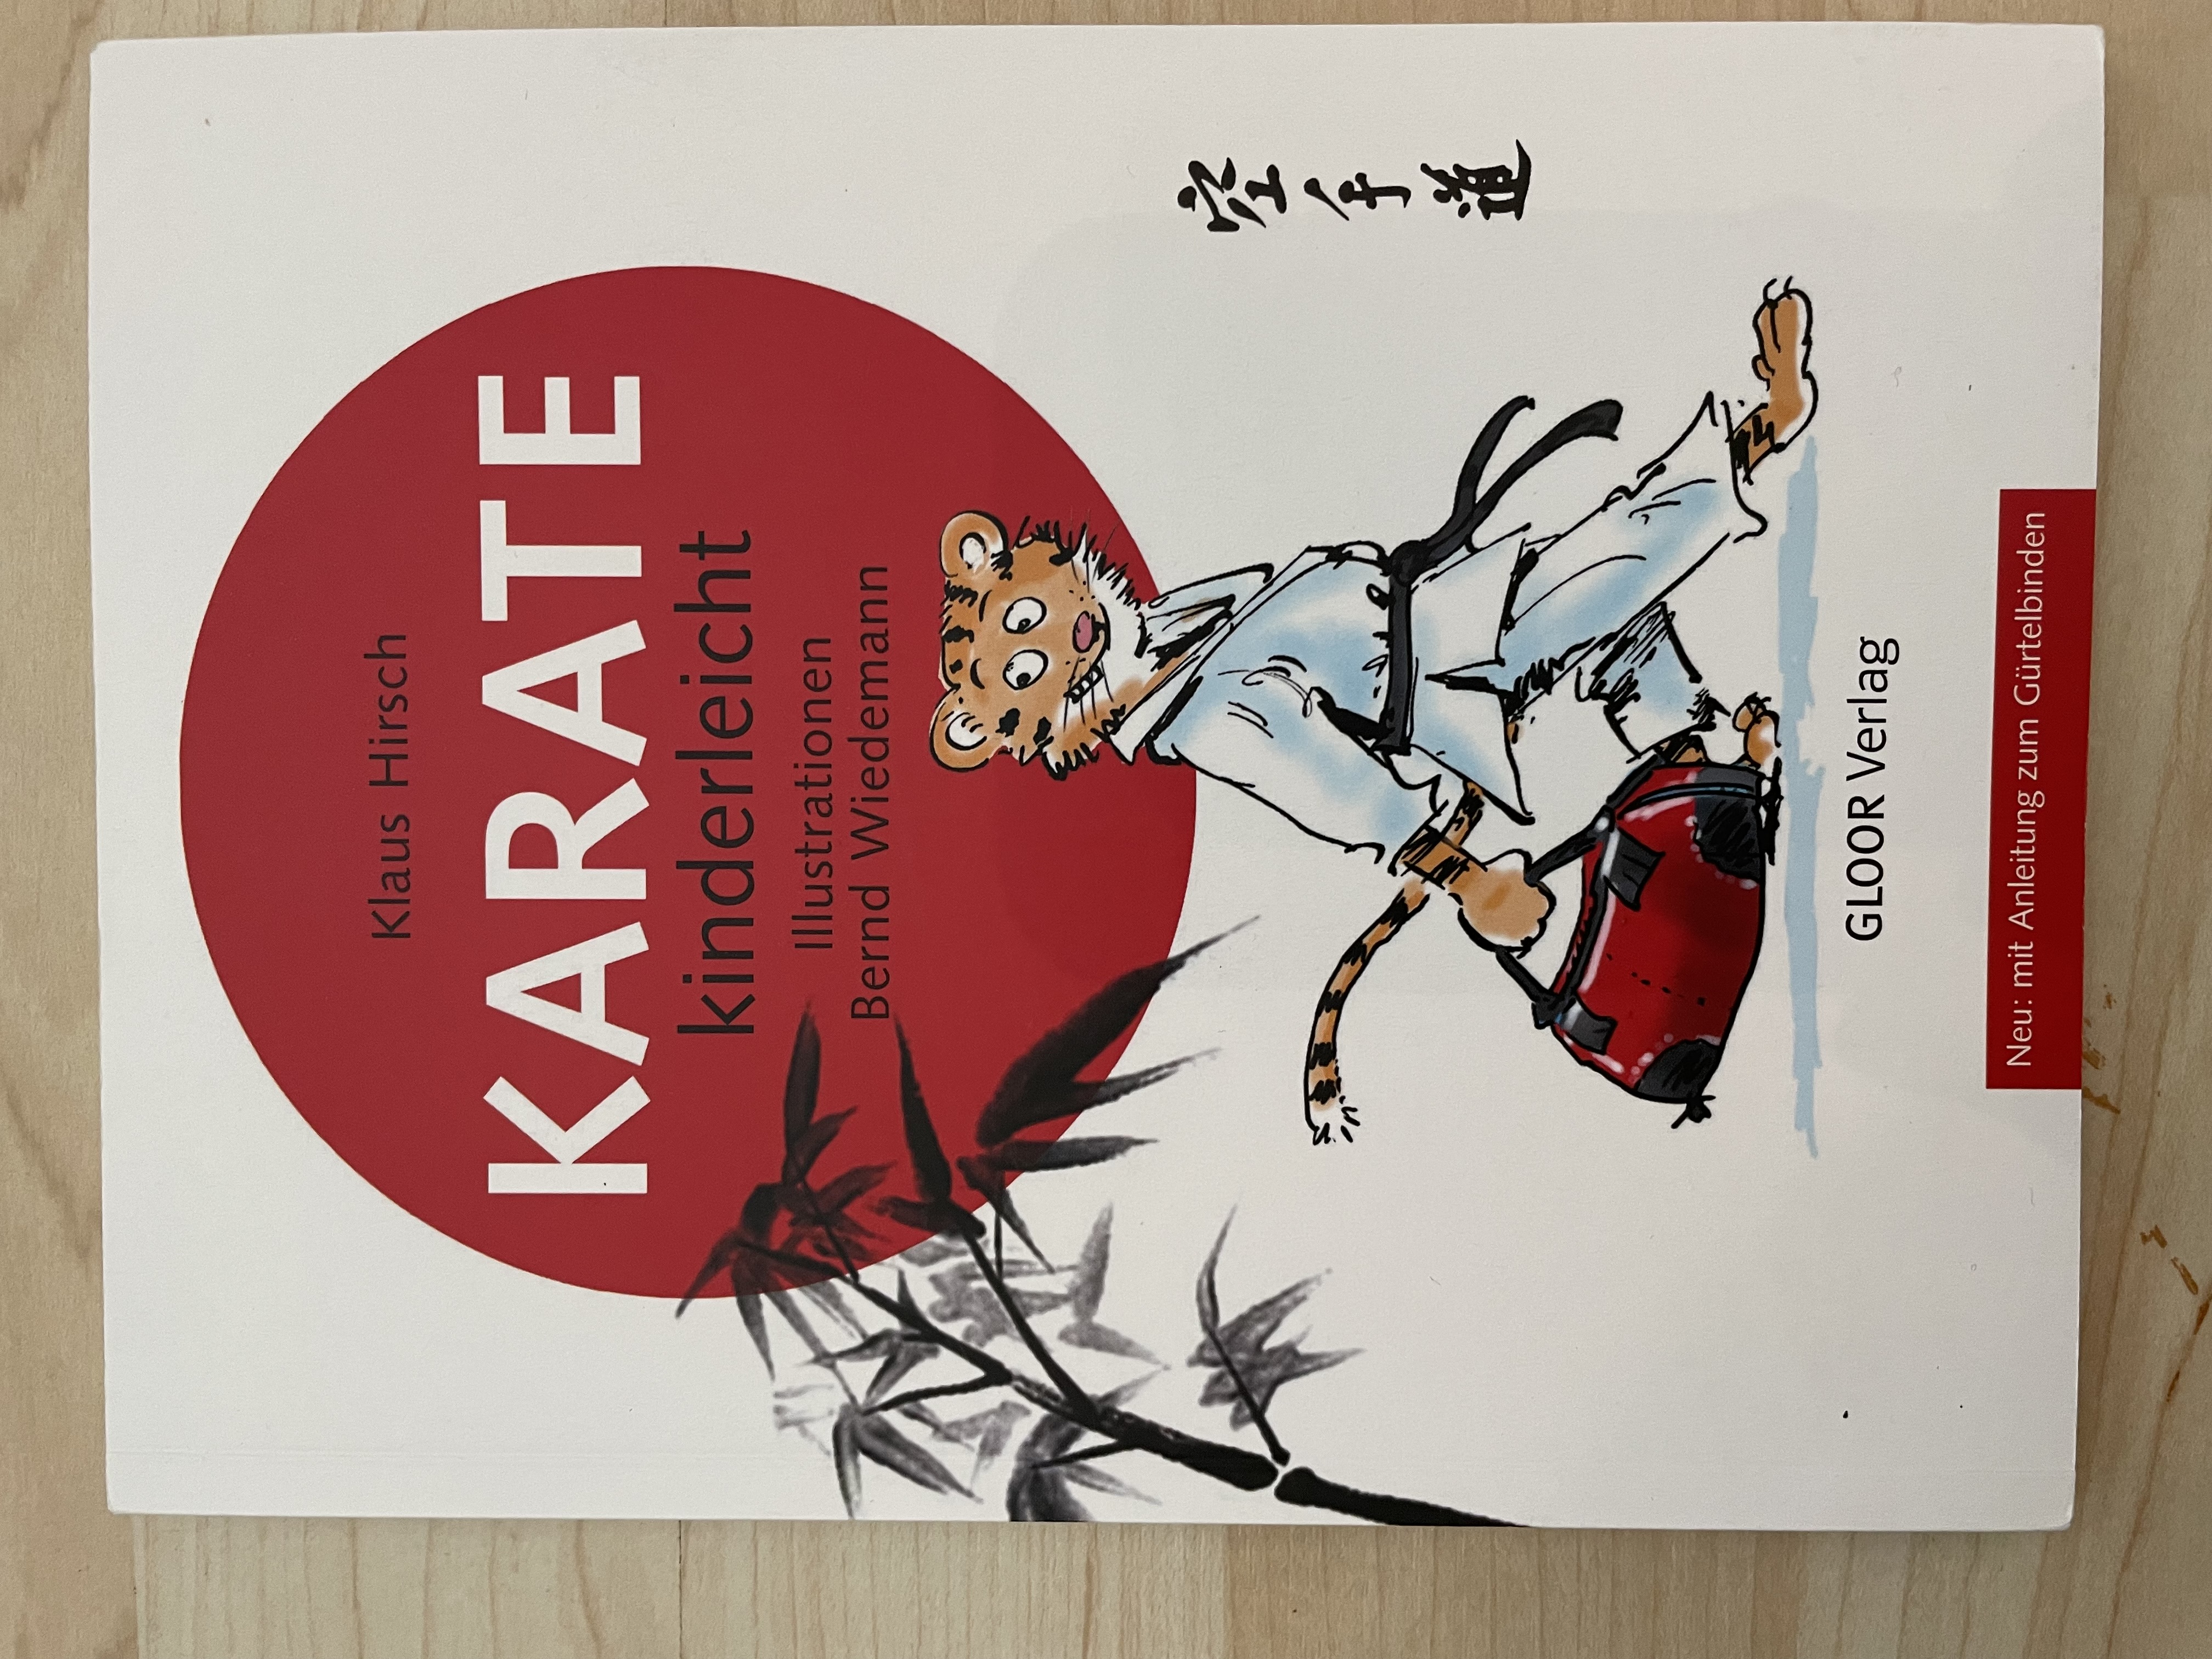 Buch "Karate kinderleicht" von Klaus Hirsch